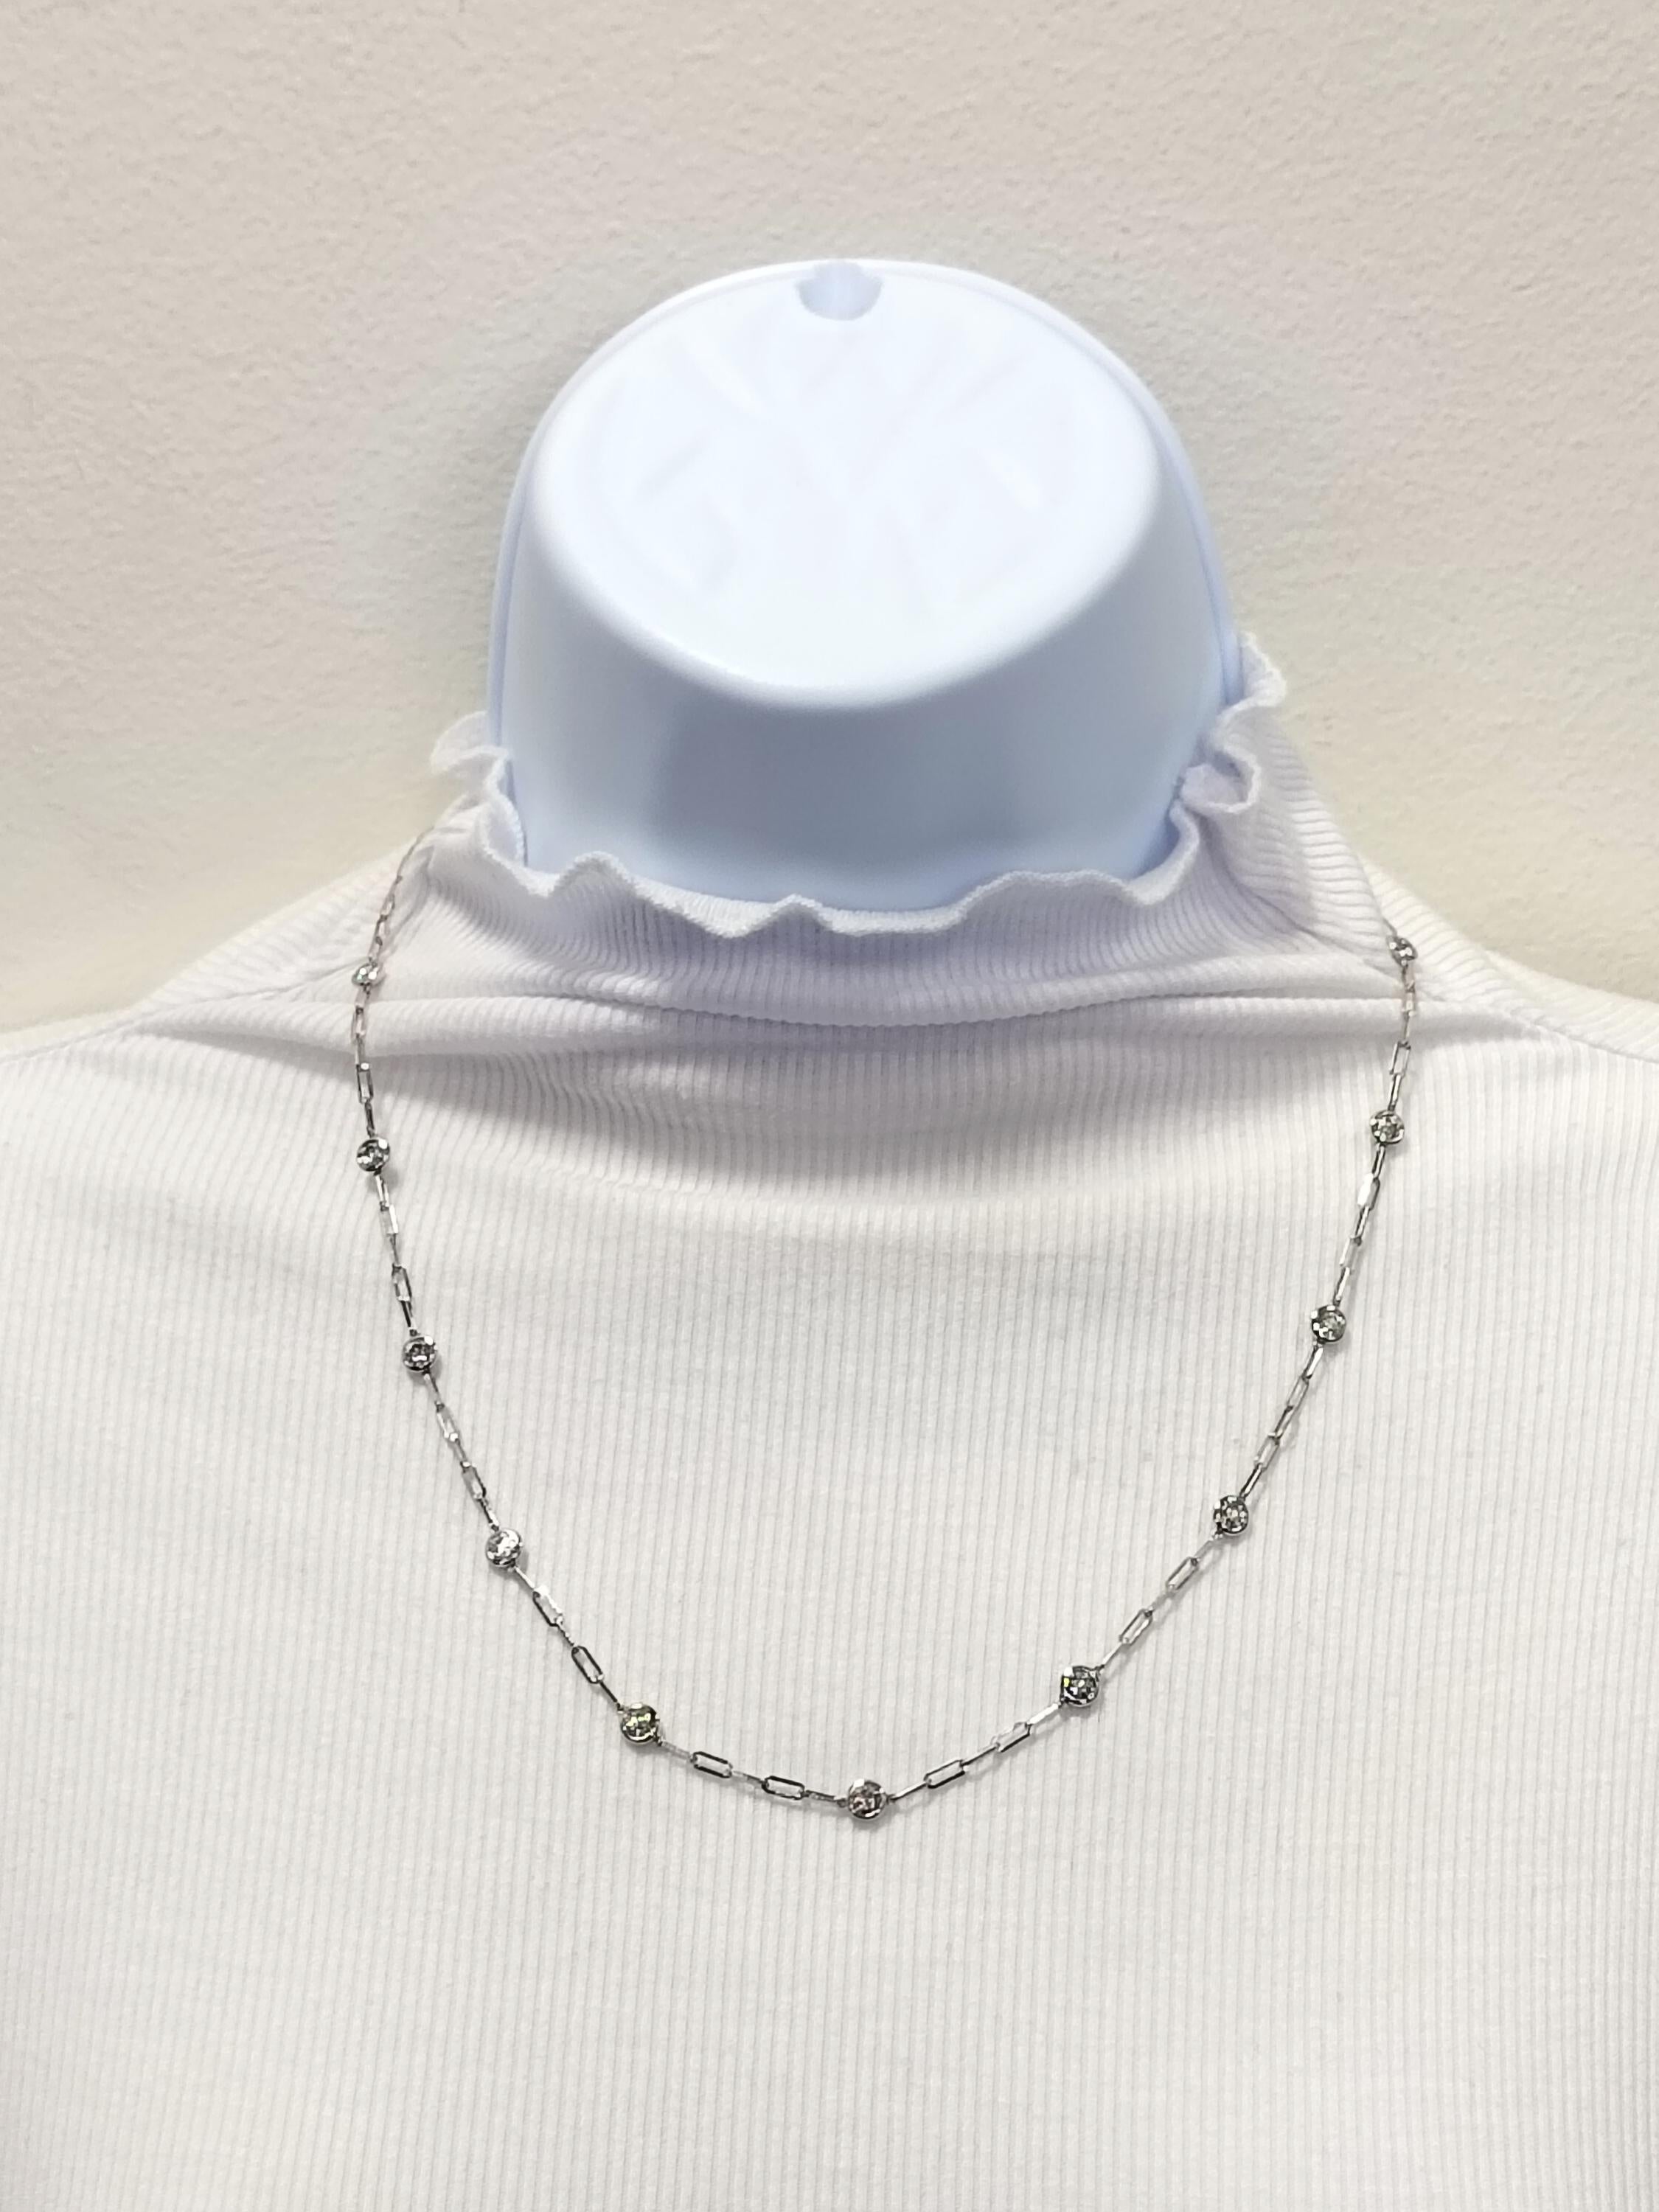 Schöne Büroklammer-Halskette mit 2,10 ct. weißen runden Diamanten von guter Qualität.  Handgefertigt aus 14k Weißgold.  Die Länge beträgt 20